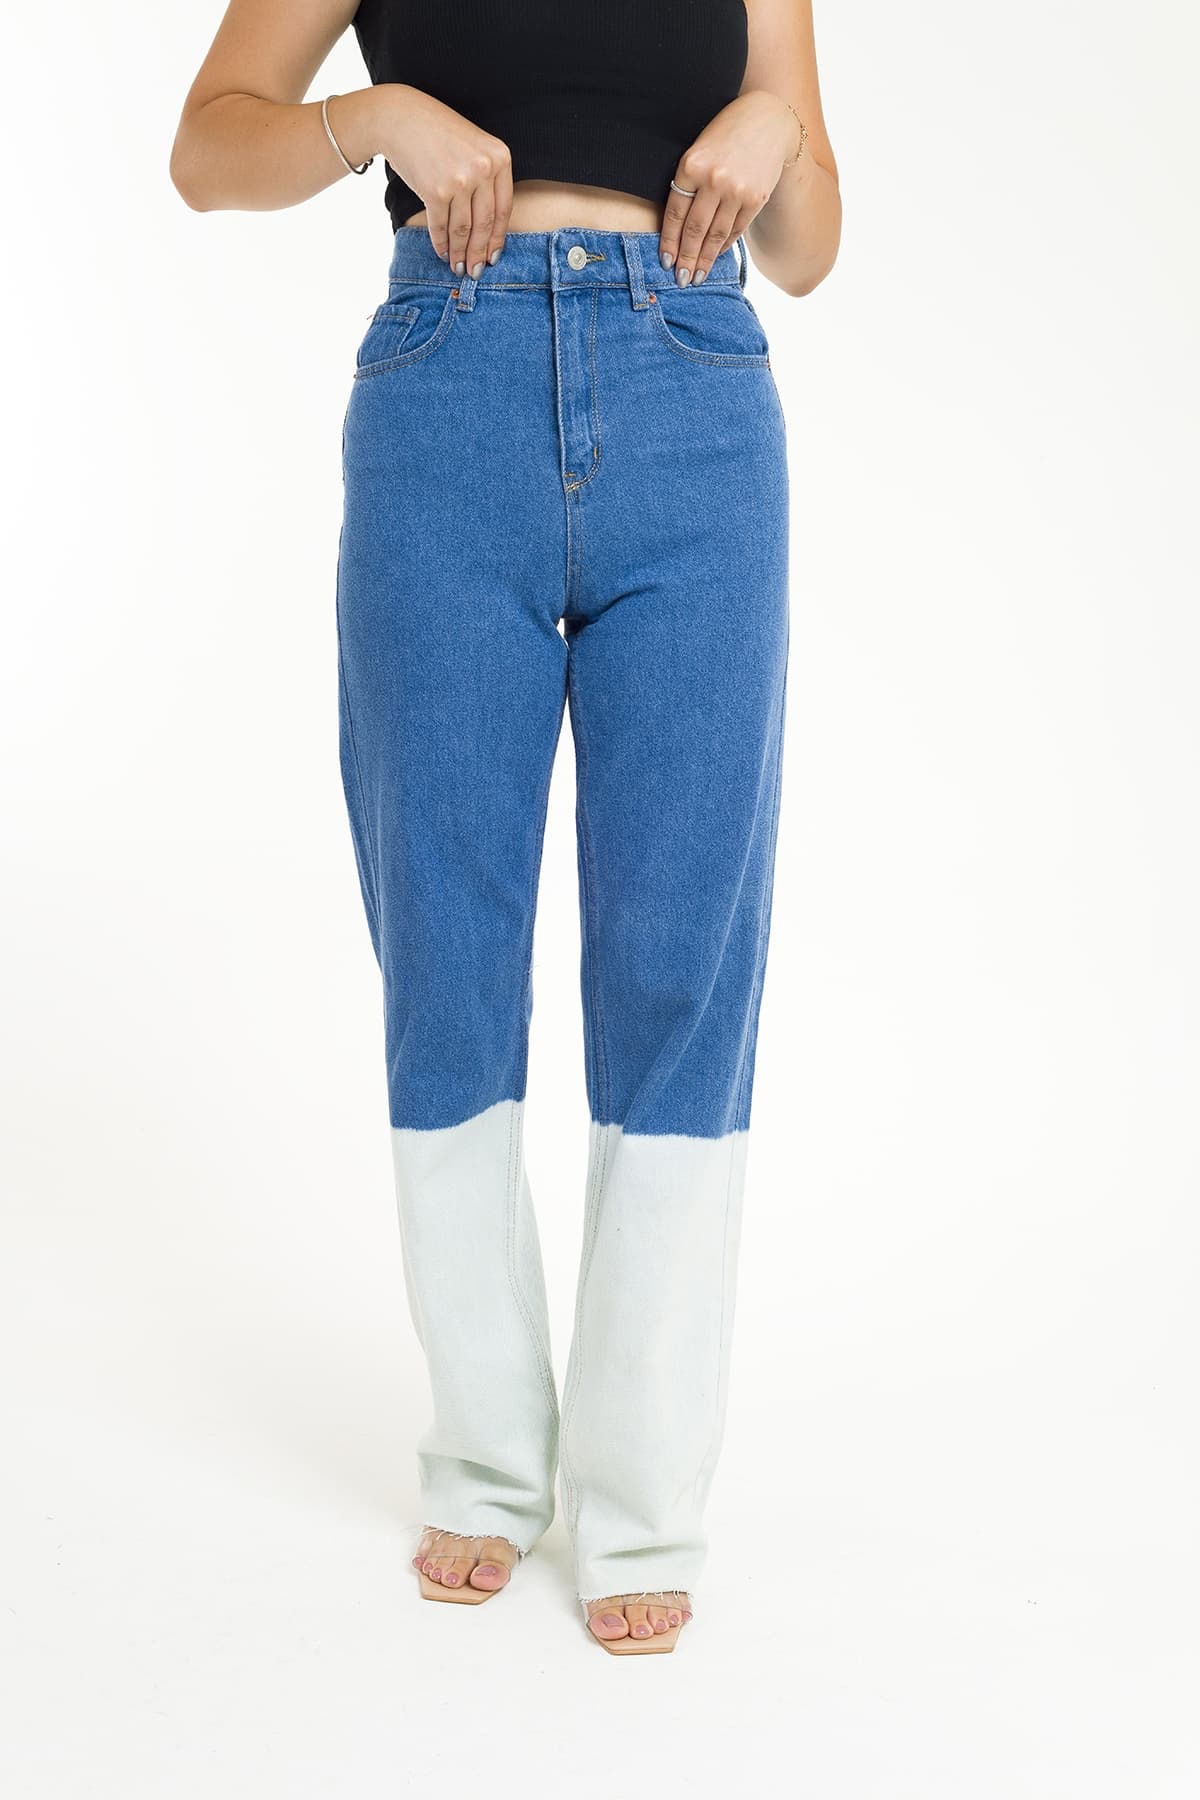 ZDN 9136 Çift Renkli Geniş Paça Kadın Kot Pantolon